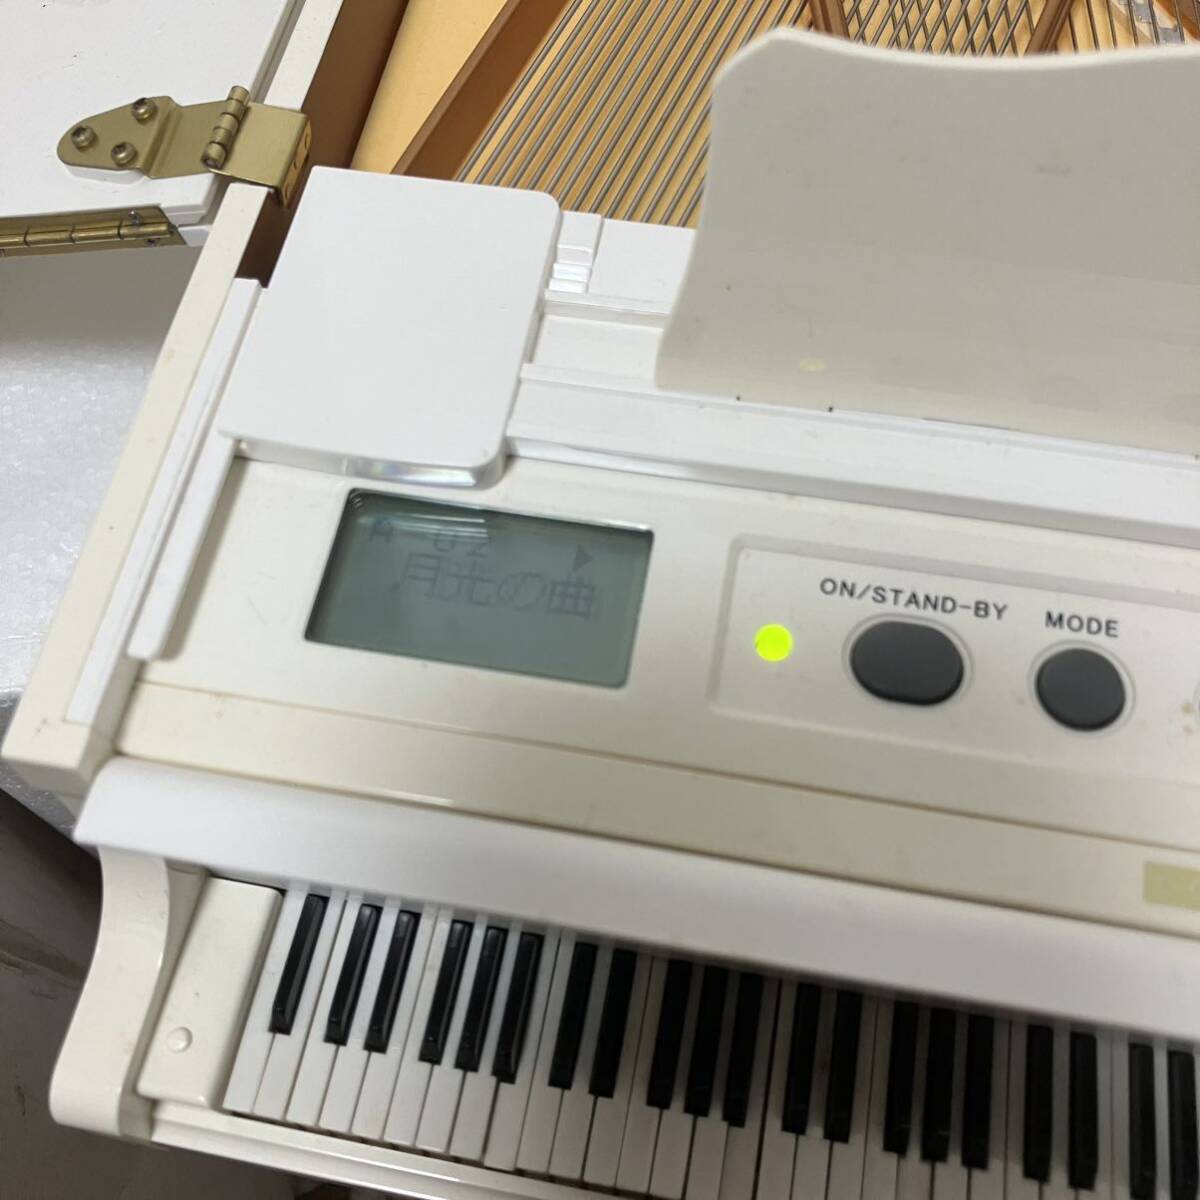 ジャンク？ 簡易テスト済み音割れ有り長期保管品外箱劣化日焼け欠品有り Grand Pianist グランドピアニスト  SEGATOYS セガトイズ の画像8